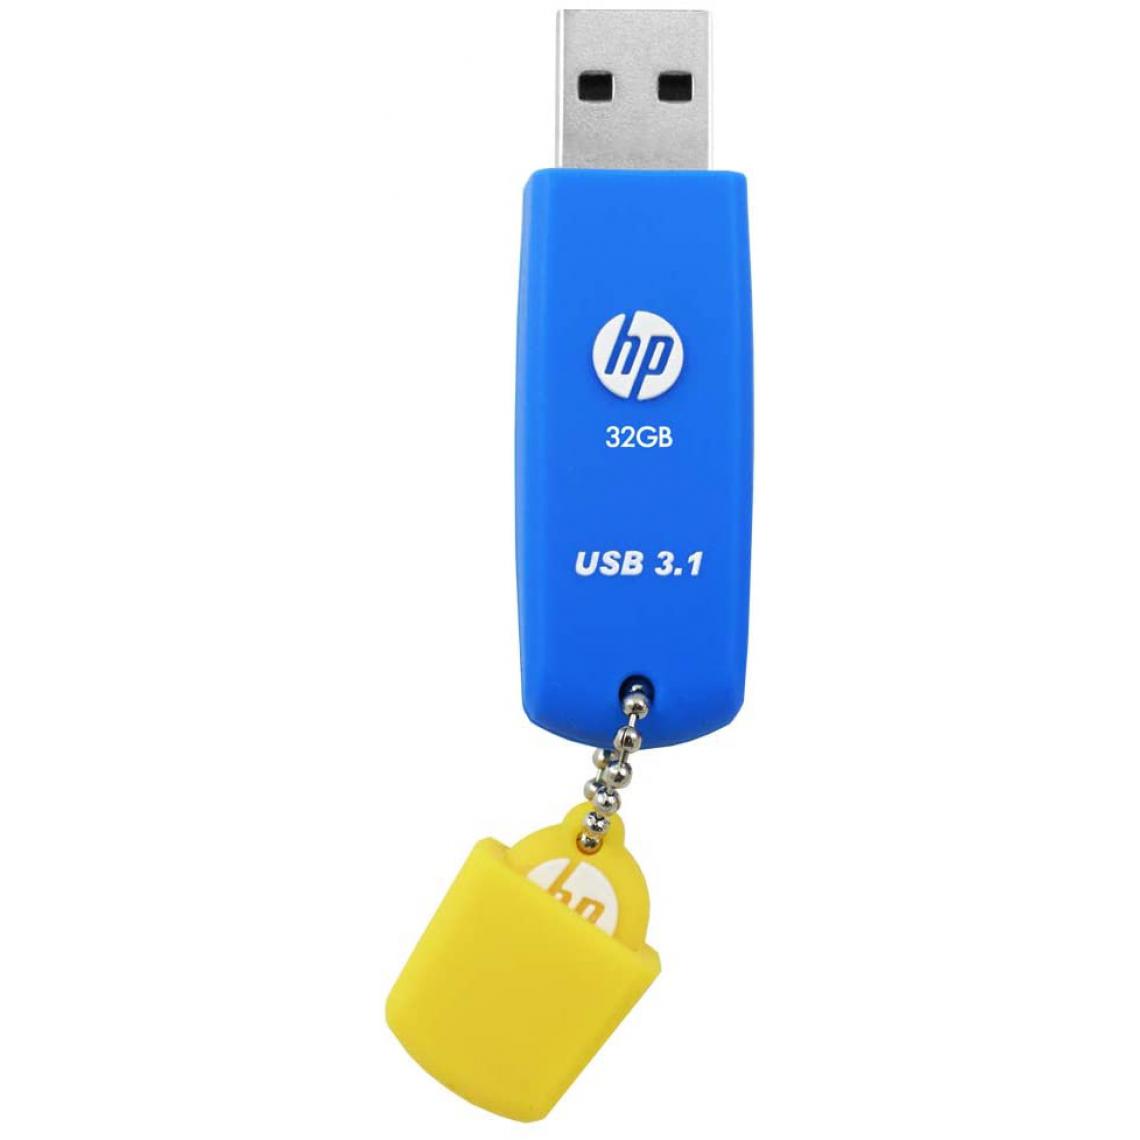 Hp - Clé USB 3.1 32 Go en caoutchouc Bleu - HPFD788B-32P - Clés USB